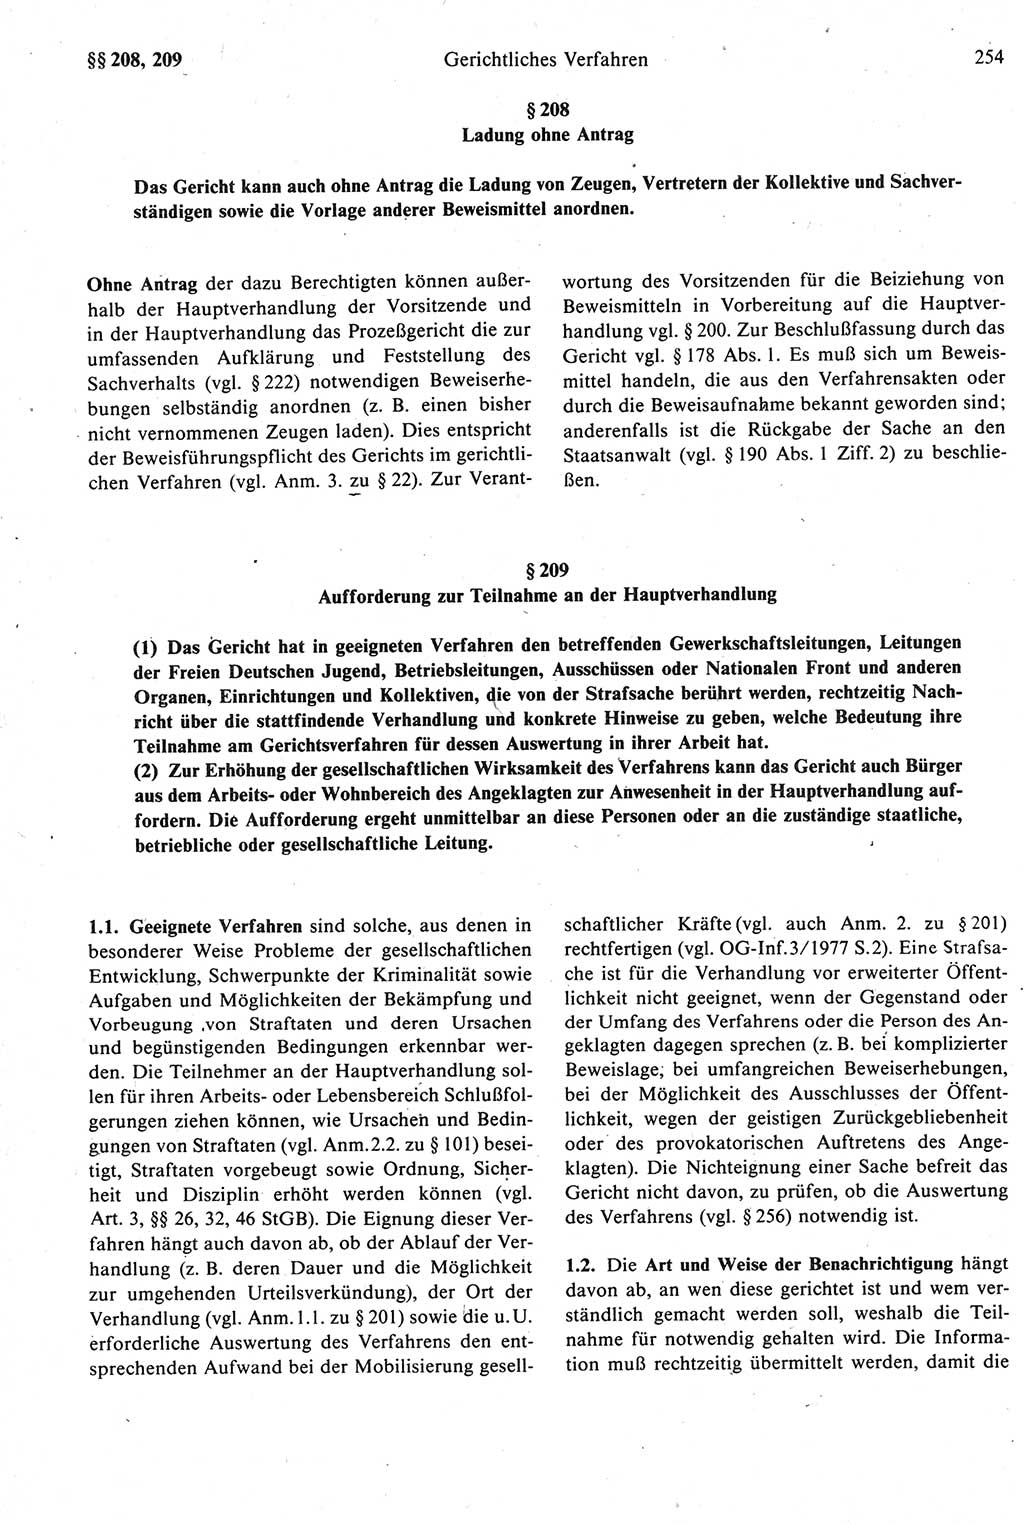 Strafprozeßrecht der DDR [Deutsche Demokratische Republik], Kommentar zur Strafprozeßordnung (StPO) 1987, Seite 254 (Strafprozeßr. DDR Komm. StPO 1987, S. 254)